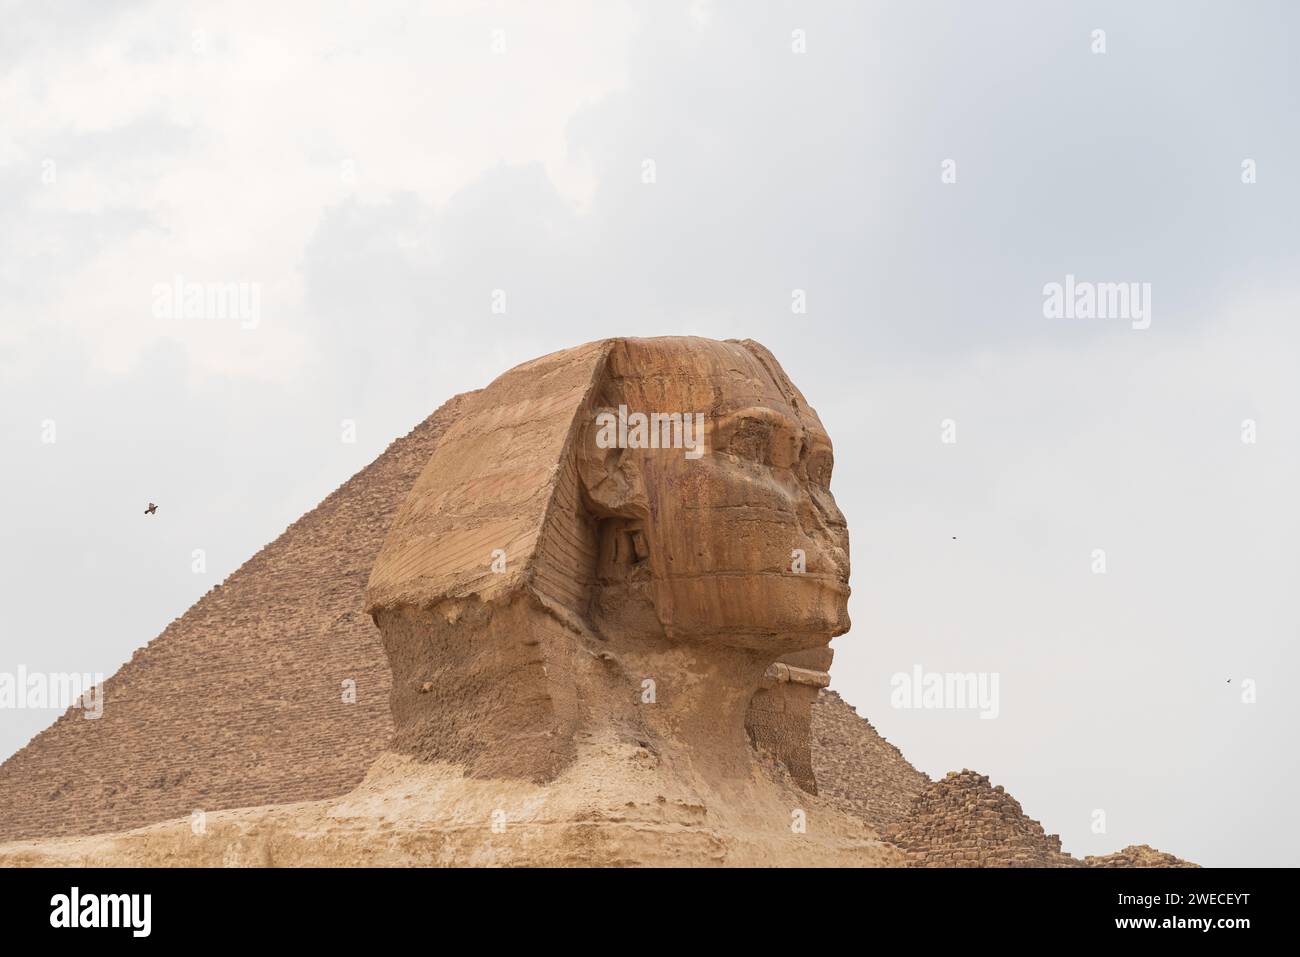 La Sfinge a Giza, Egitto: Un antico guardiano, simbolo dell'eredità faraonica, che si erge maestosamente sull'altopiano di Giza Foto Stock